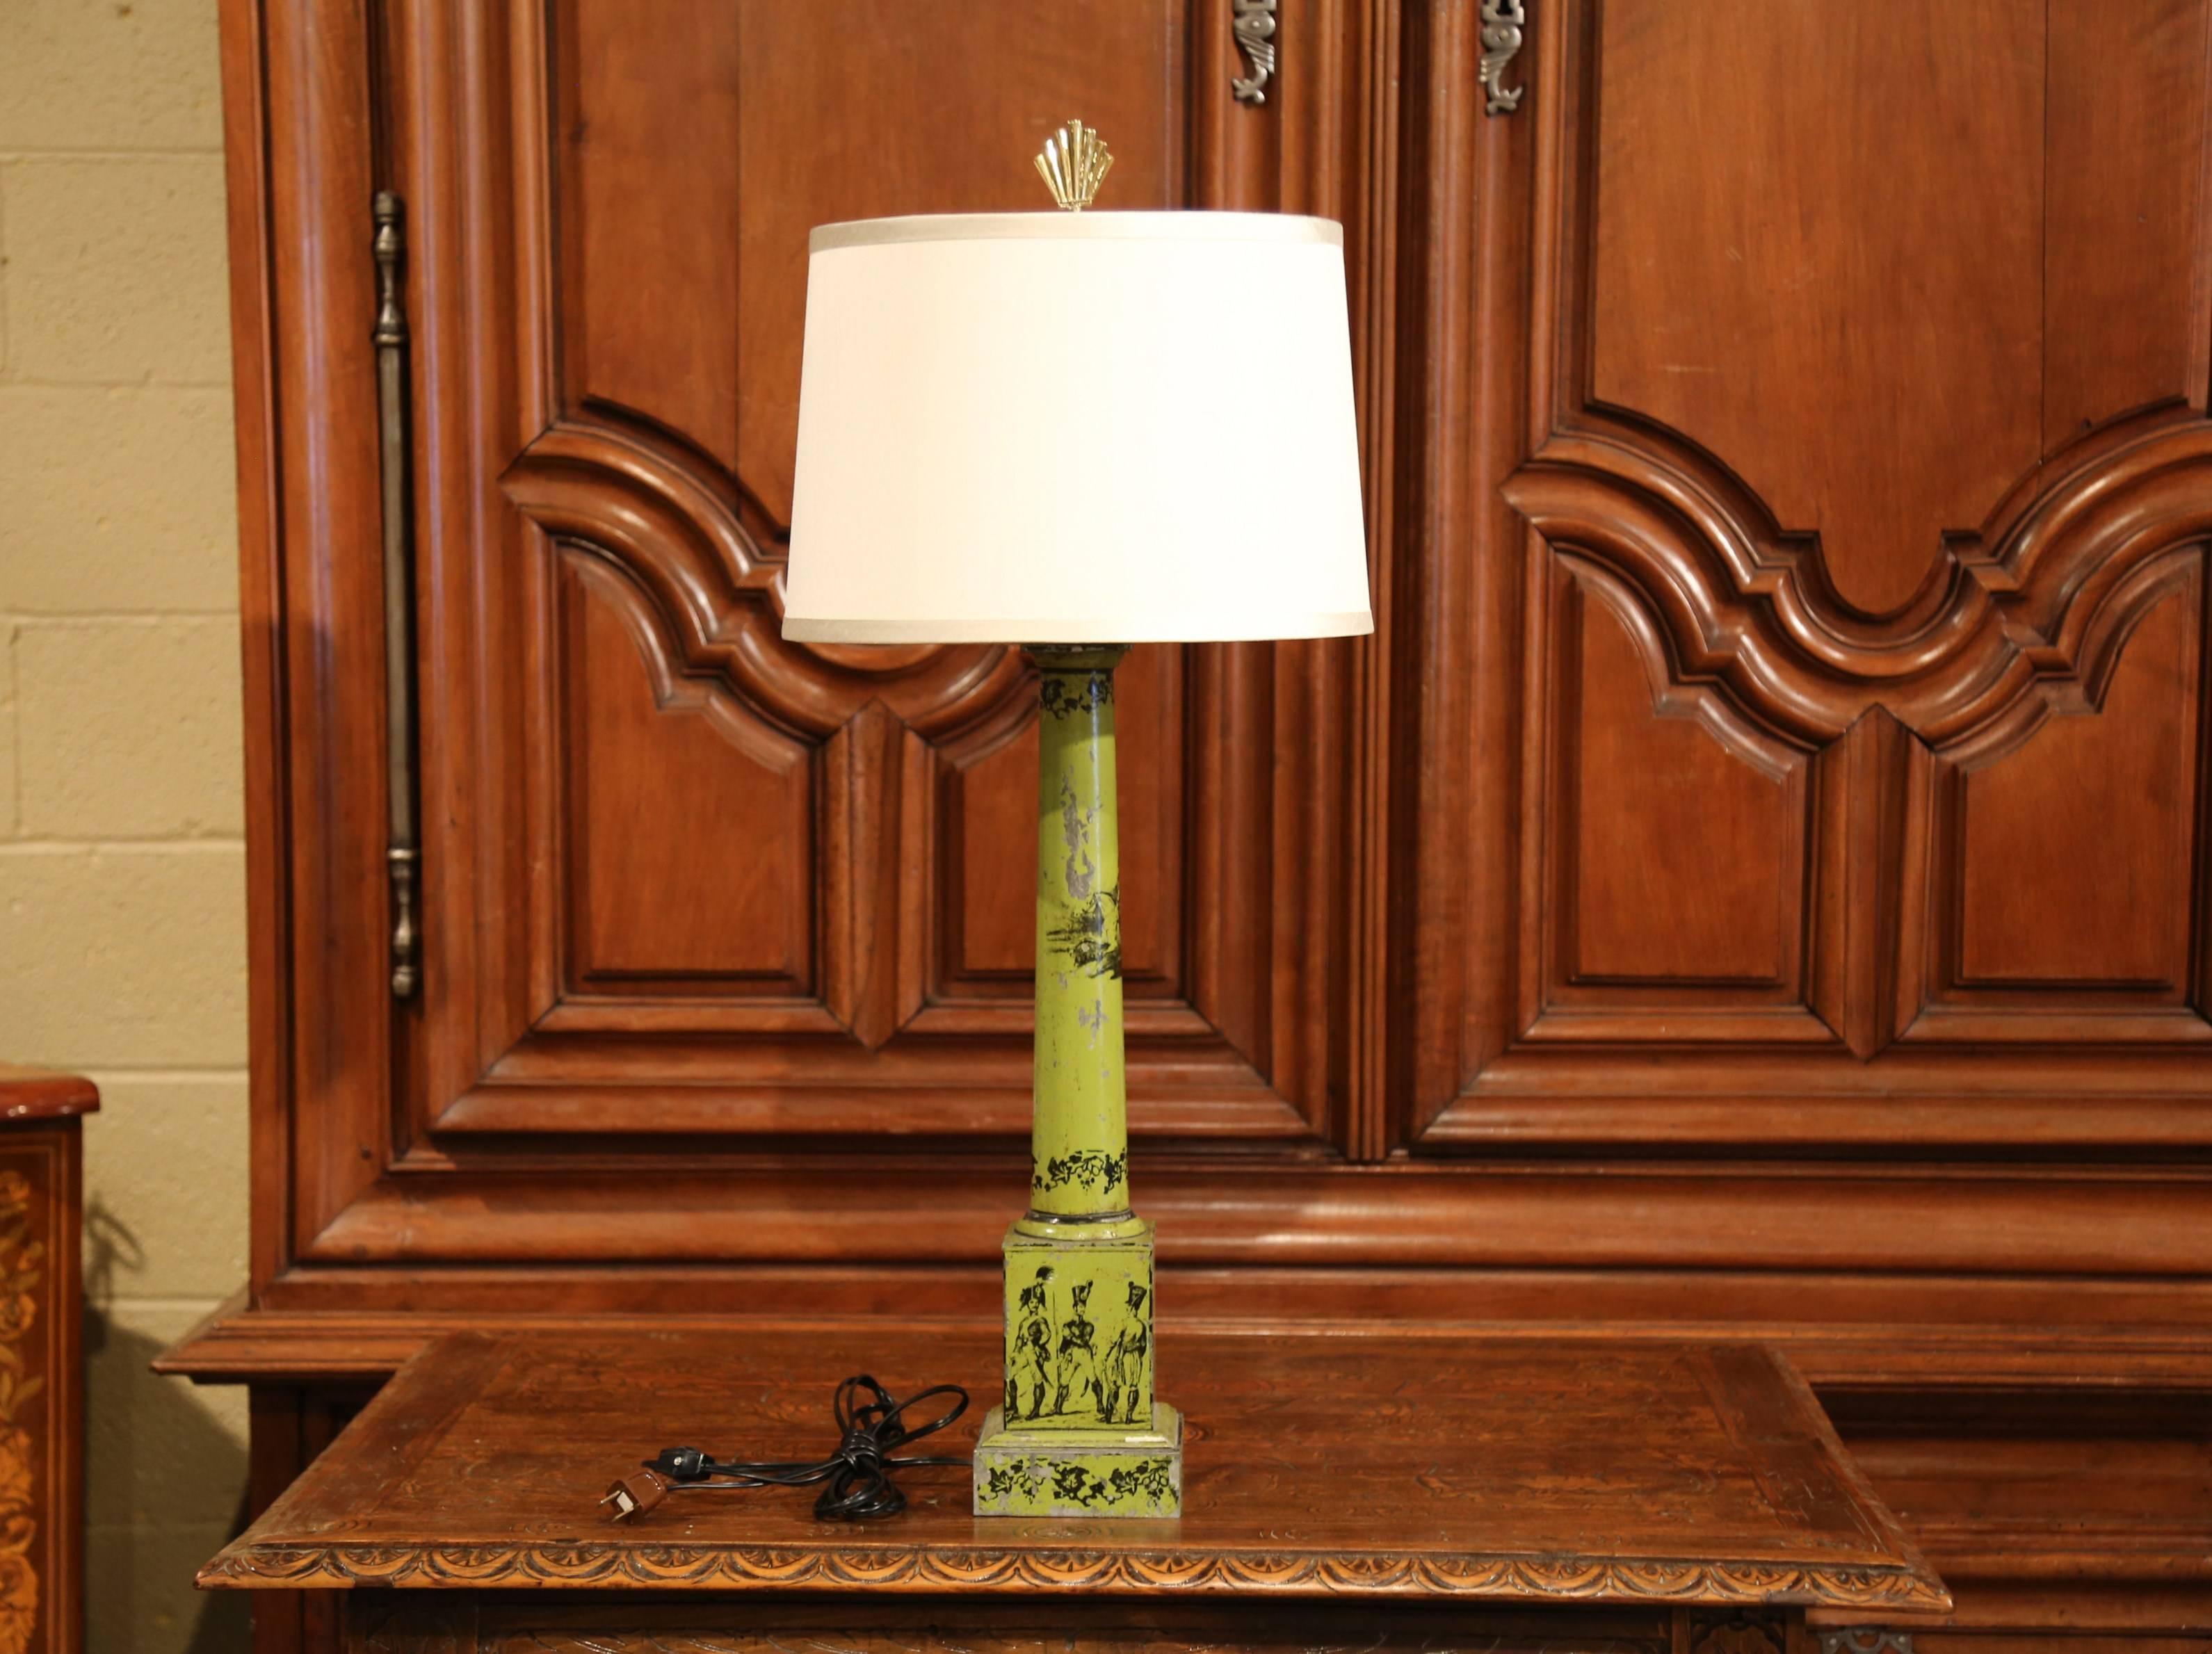 Décorez une table avec cette élégante lampe tole antique. Fabriqué en France vers 1840, ce luminaire au câblage neuf repose sur une base carrée surmontant une haute tige, et présente un décor de soldats et de feuillages peints à la main en noir sur